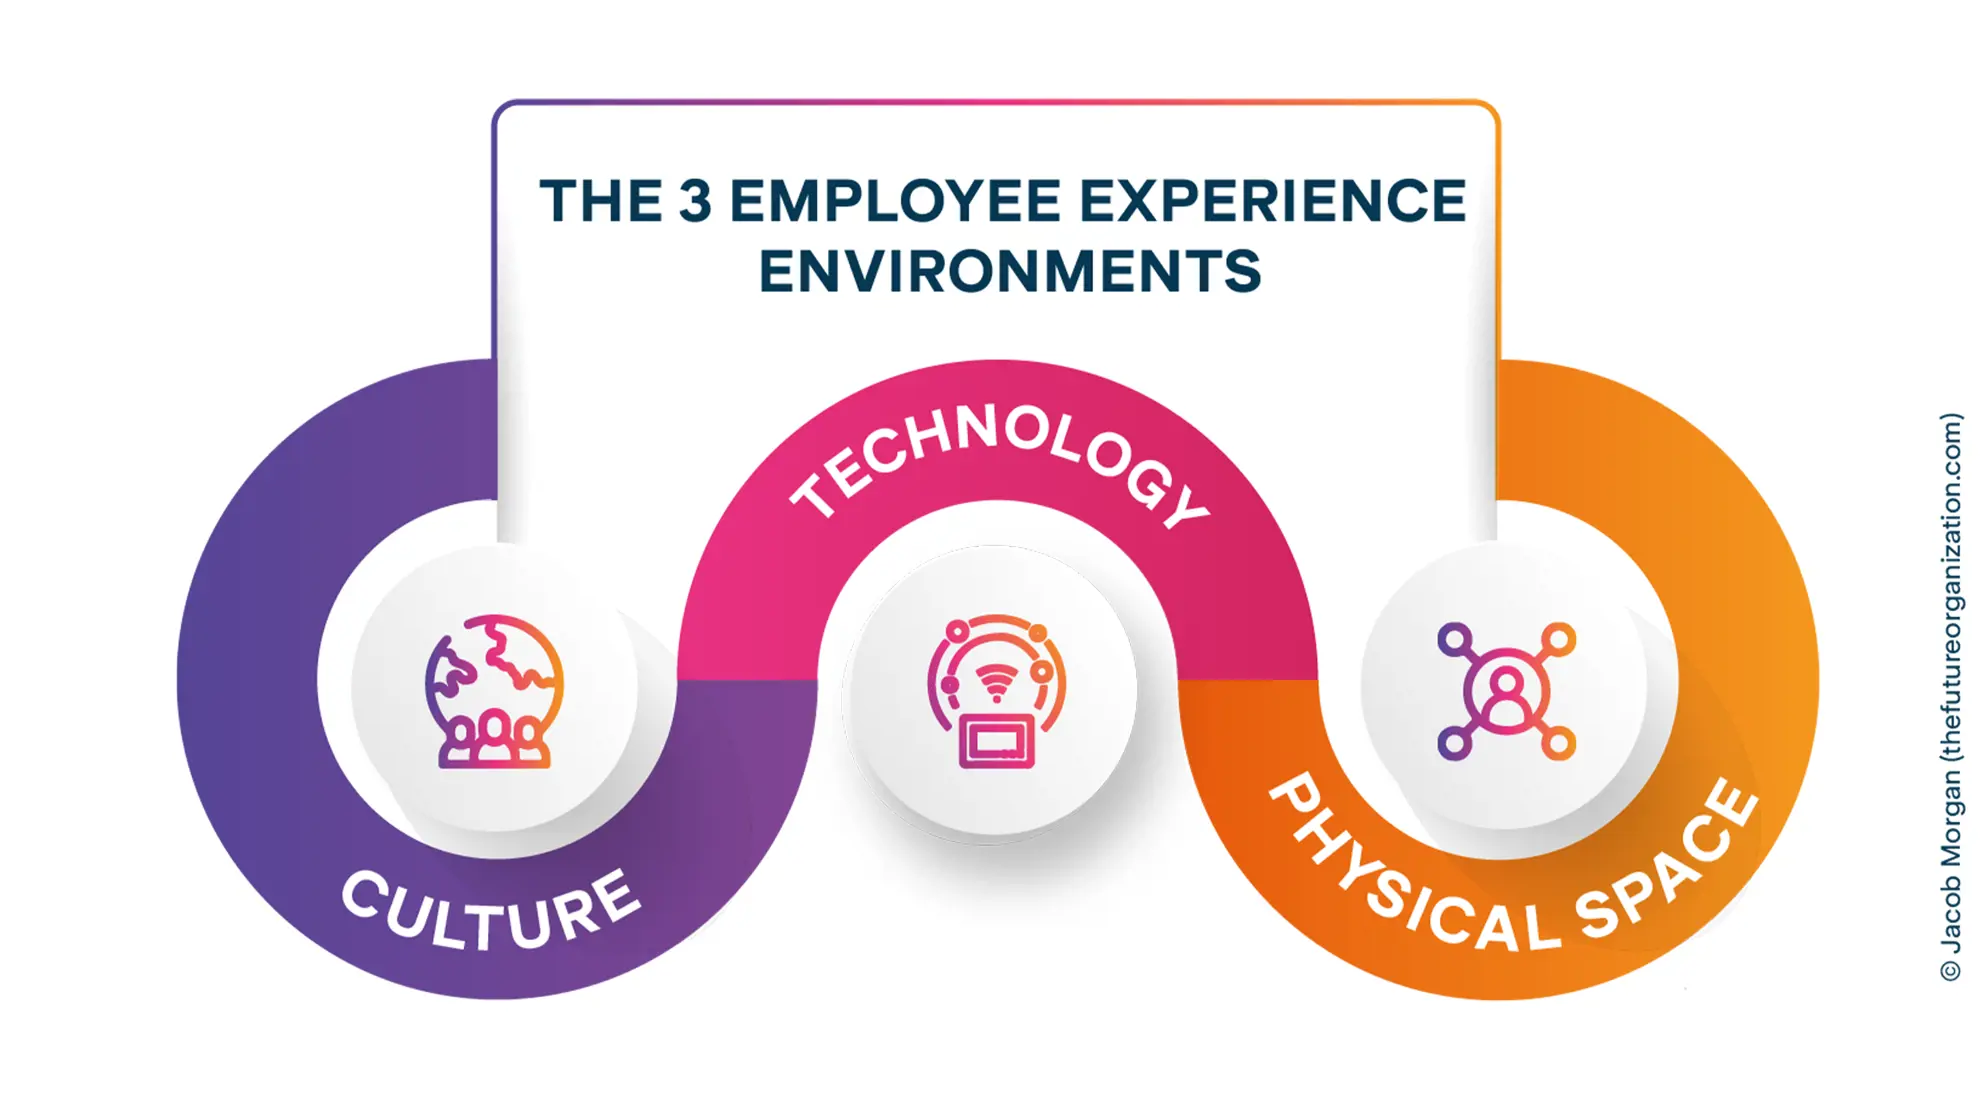 Grafik zu Employee Experience Pfeiler: Kultur, Technologie und physischer Arbeitsplatz